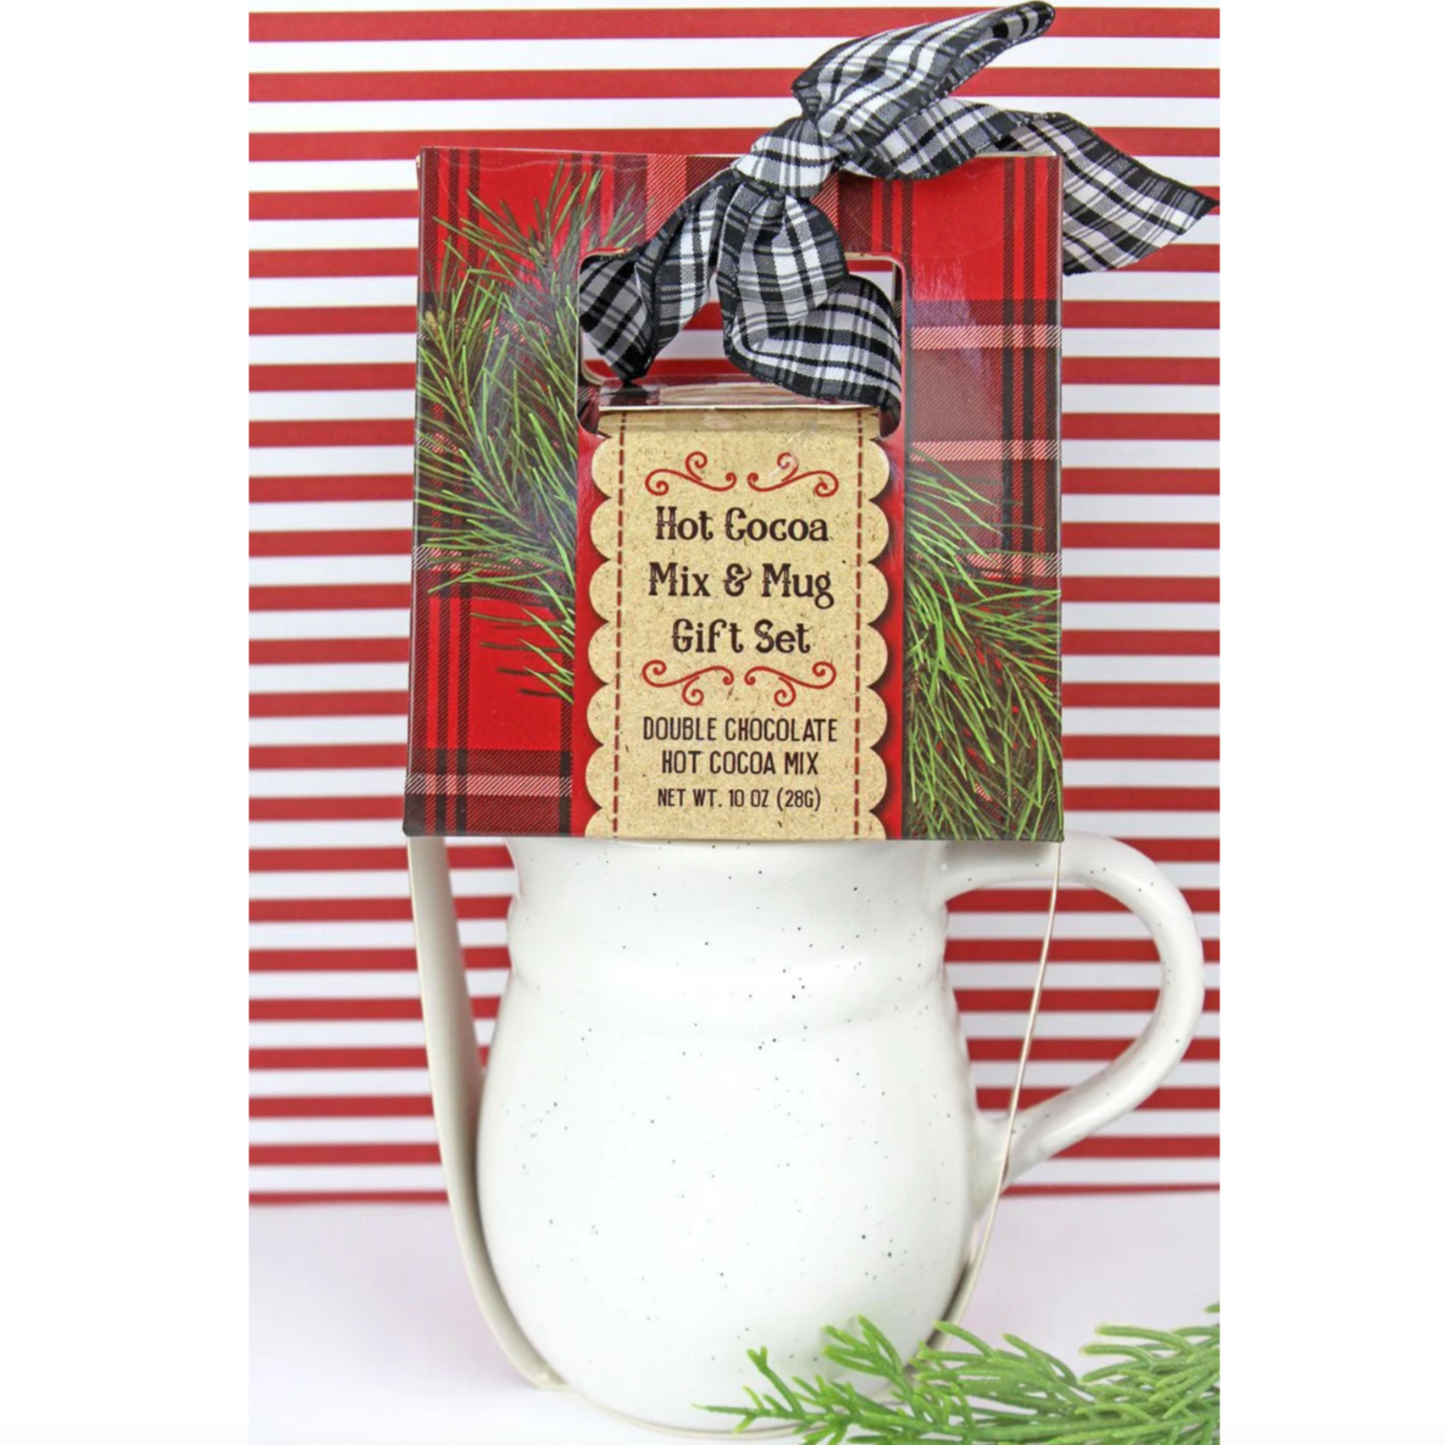 Hot Cocoa Mix and Mug Gift Set